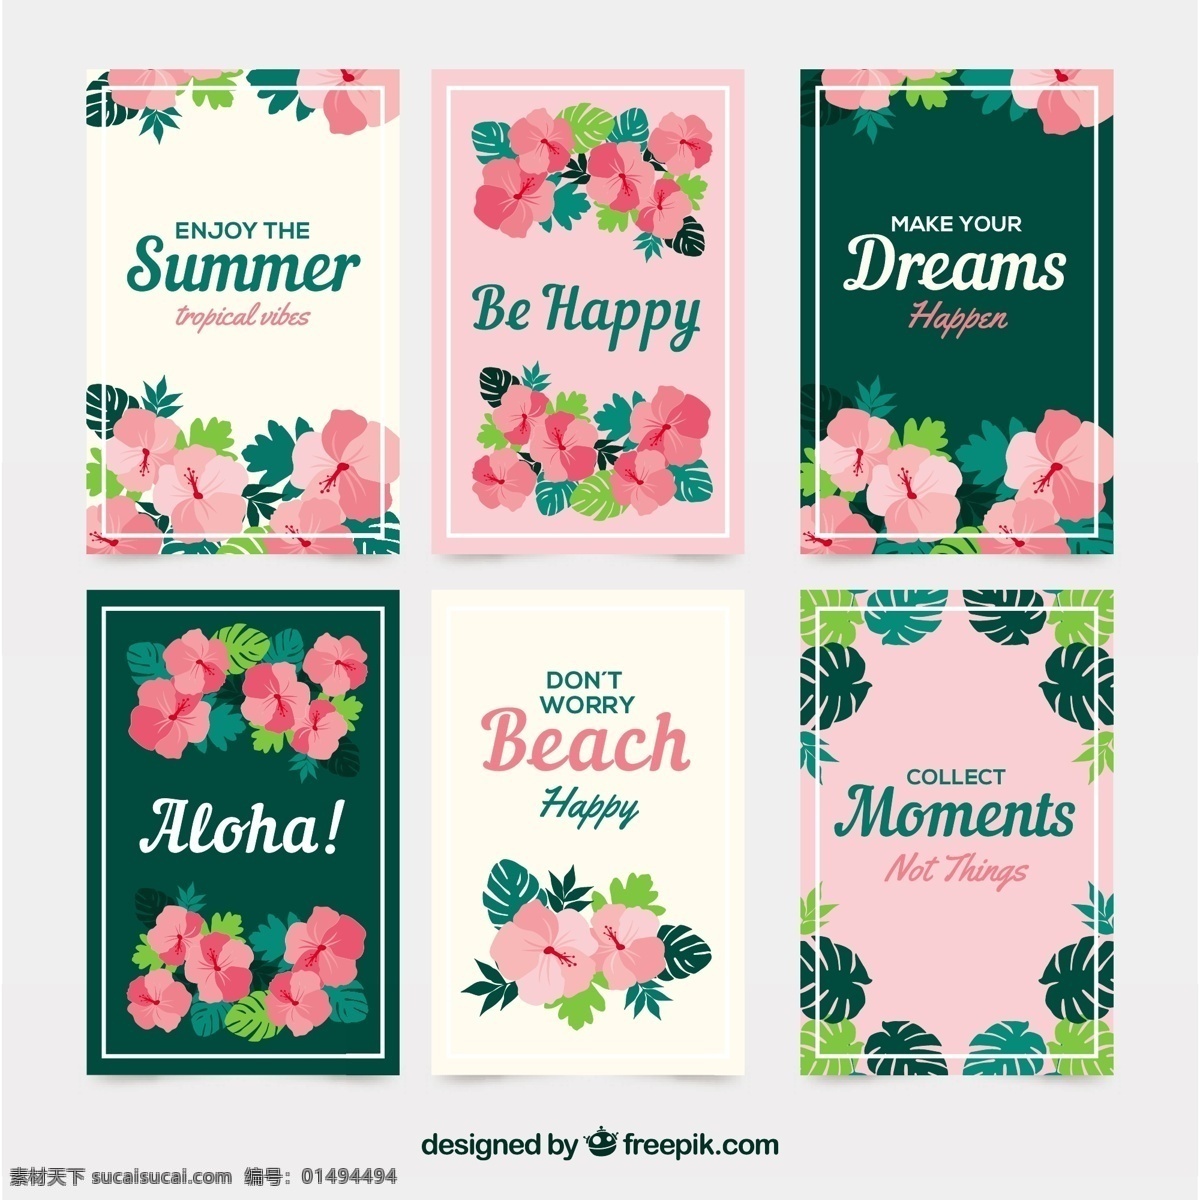 热带 夏季 梦想 卡 花卉 模板 自然 报价 字体 文字 五颜六色 平板 植物 平面设计 贺卡 留言 刻字 开花